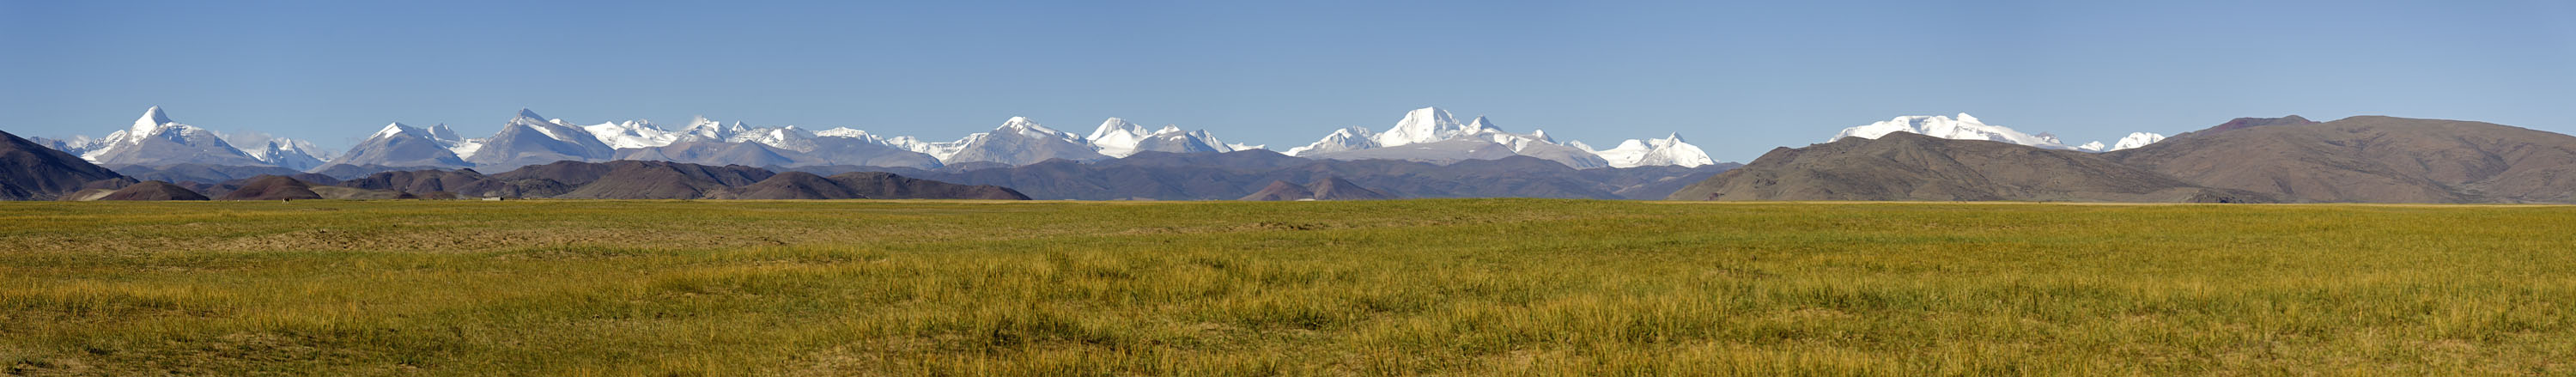 Tibetische Landschaften 03